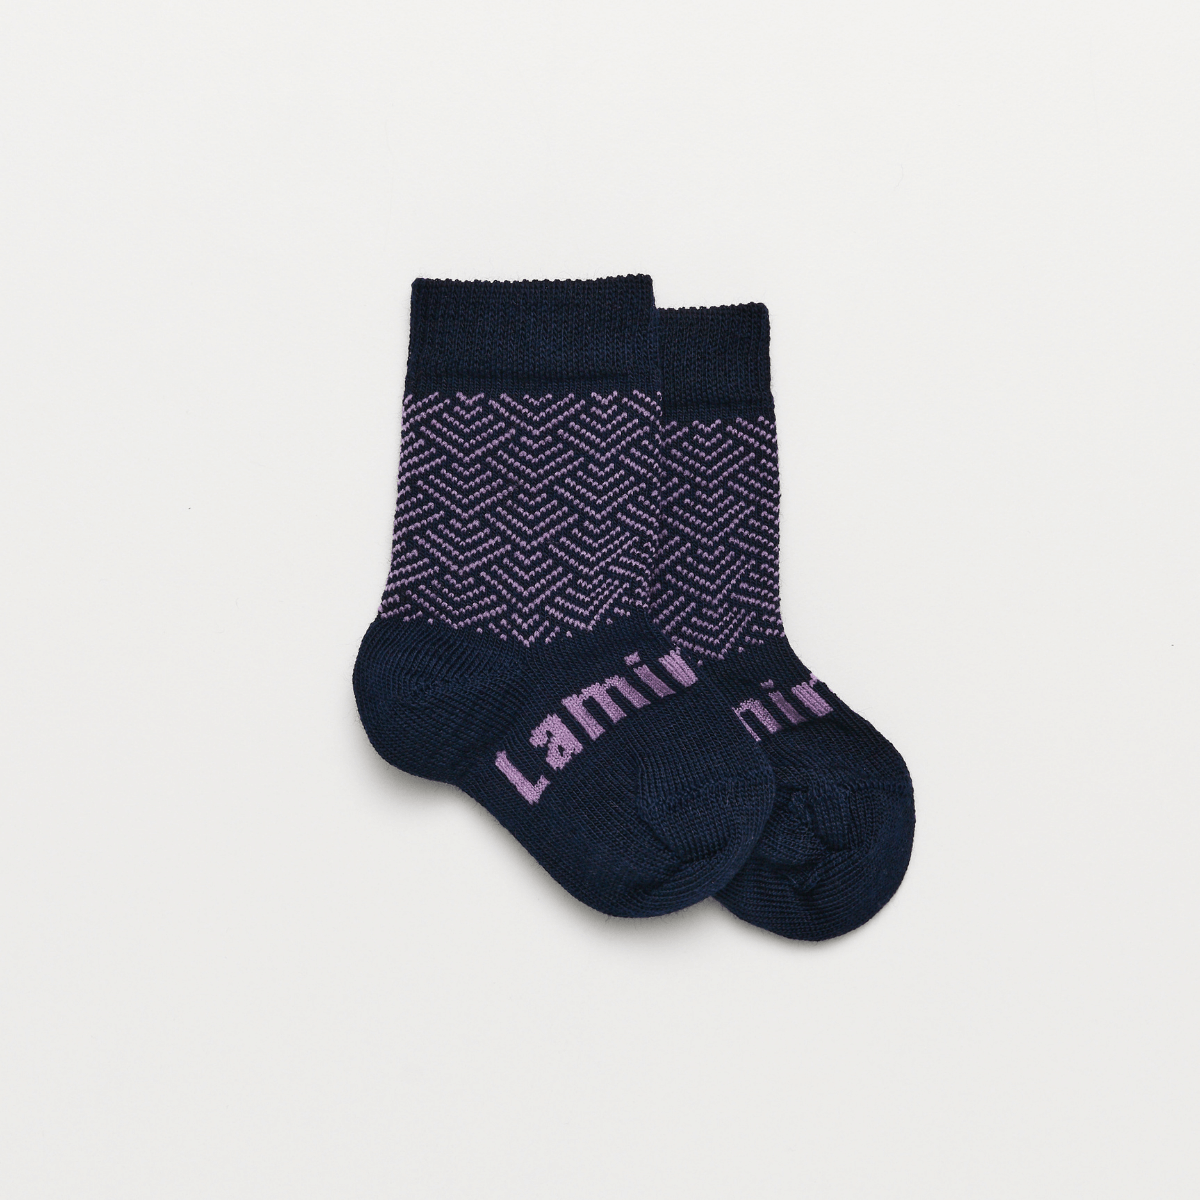 merino wool baby socks navy and purple